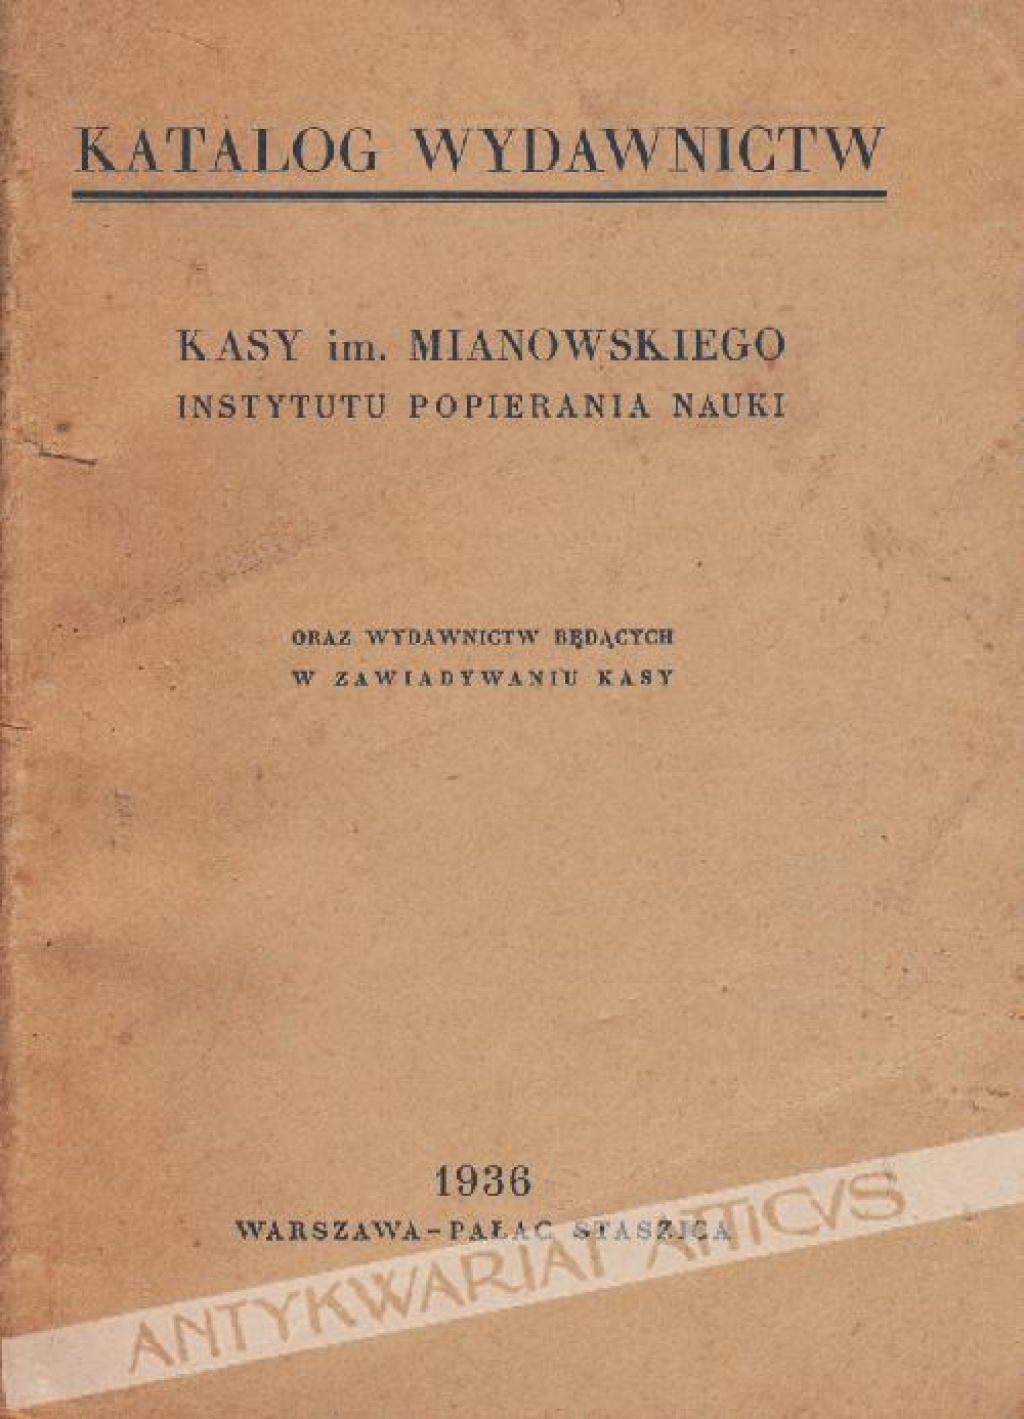 Katalog wydawnictw Kasy im. Mianowskiego Instytutu Popierania Nauki oraz wydawnictw będących w zawiadywaniu kasy